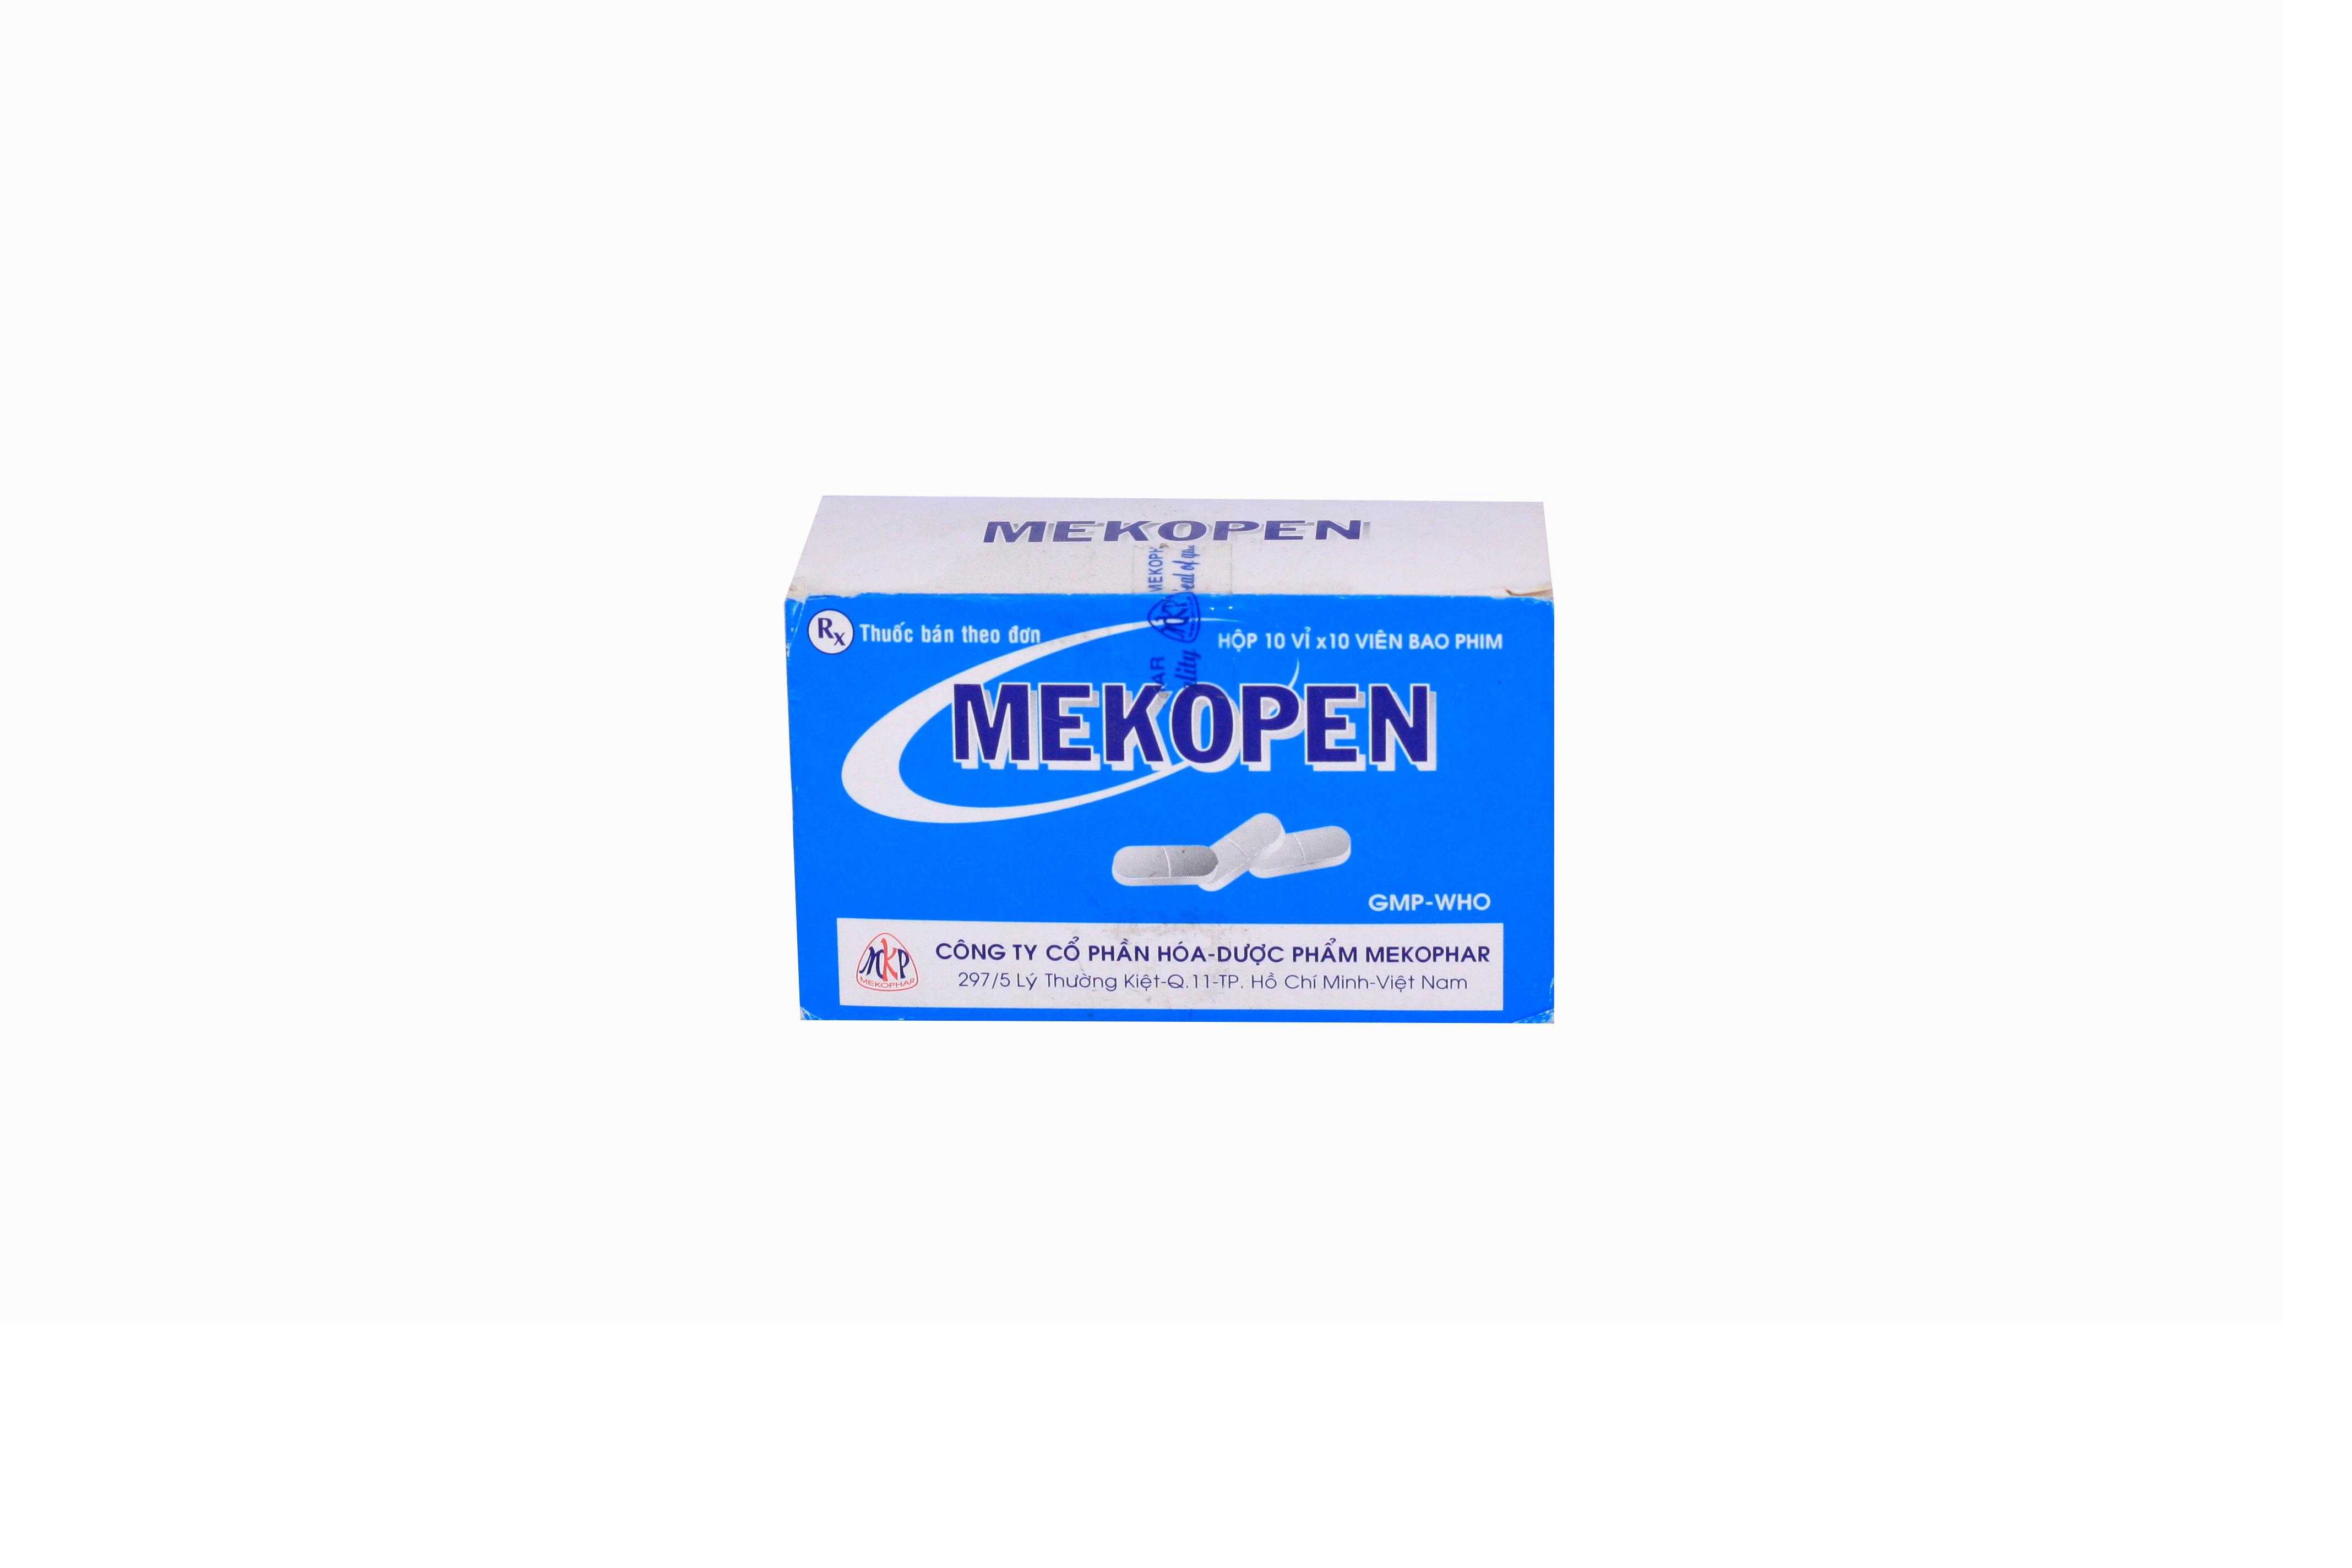 Mekopen (Penicillin) Mekophar (H/100v)